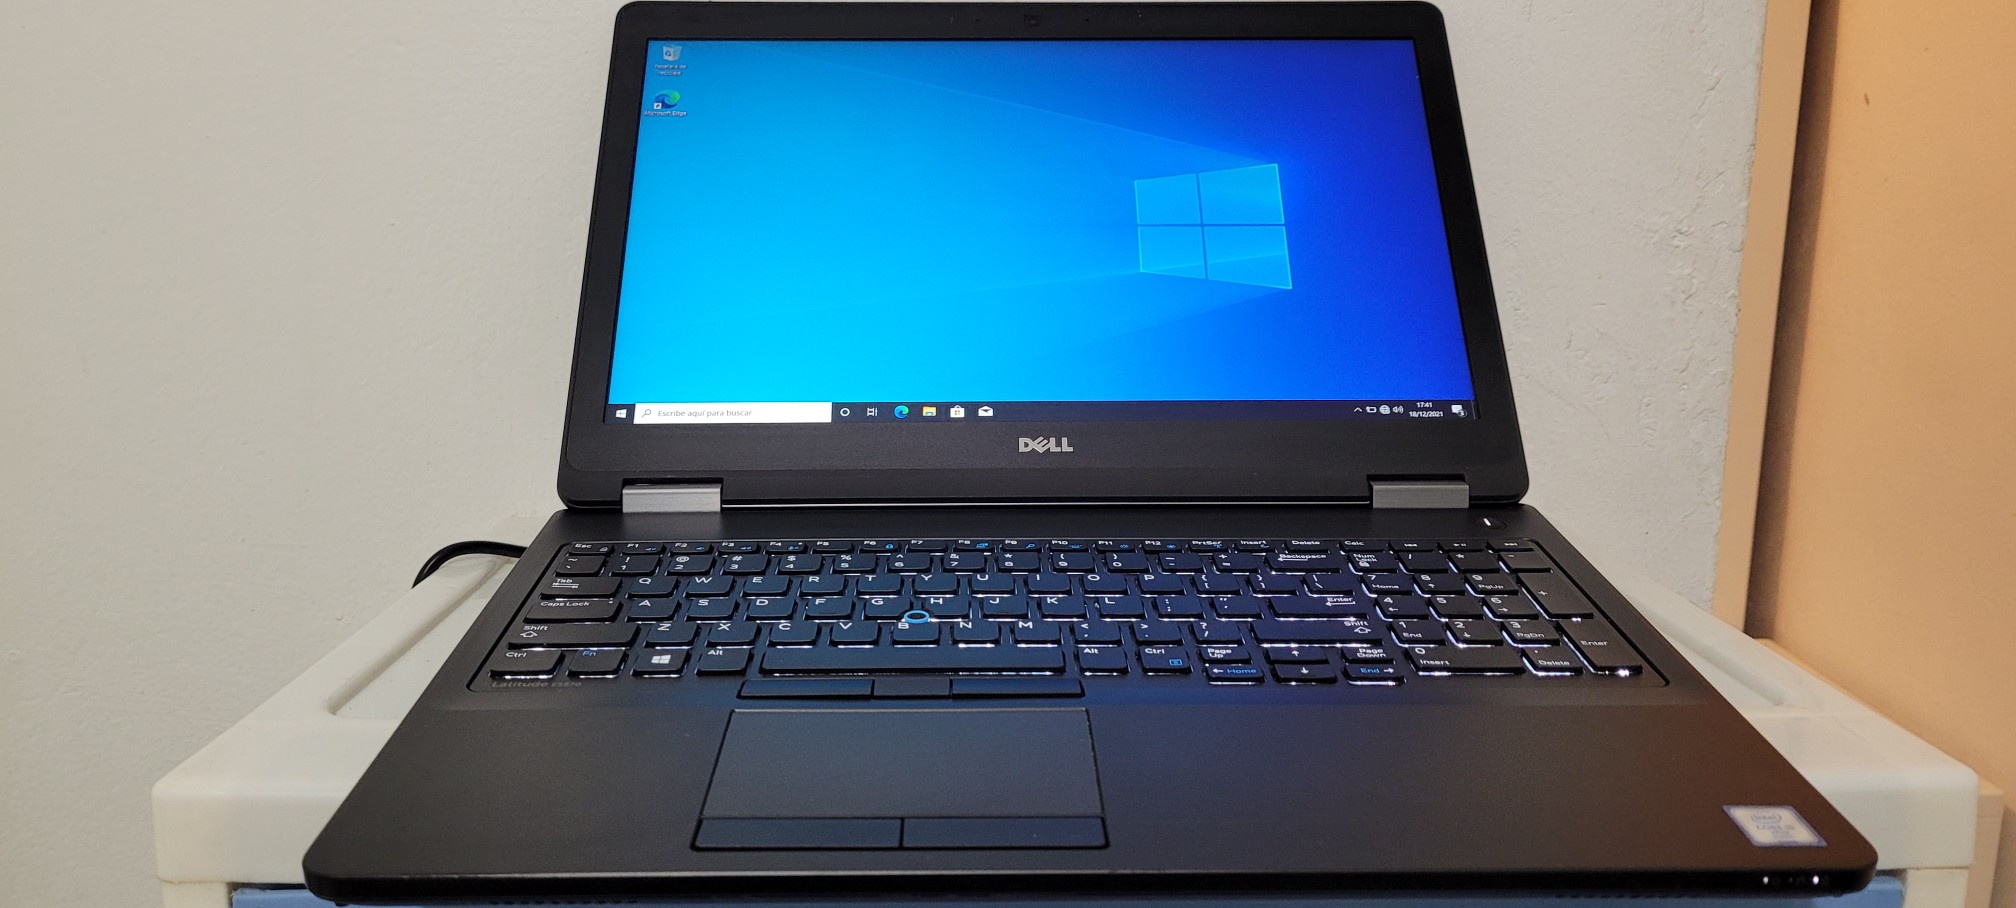 computadoras y laptops - Dell 5570 17 Pulg Core i5 6ta Gen Ram 8gb ddr4 Disco 256gb SSD Full